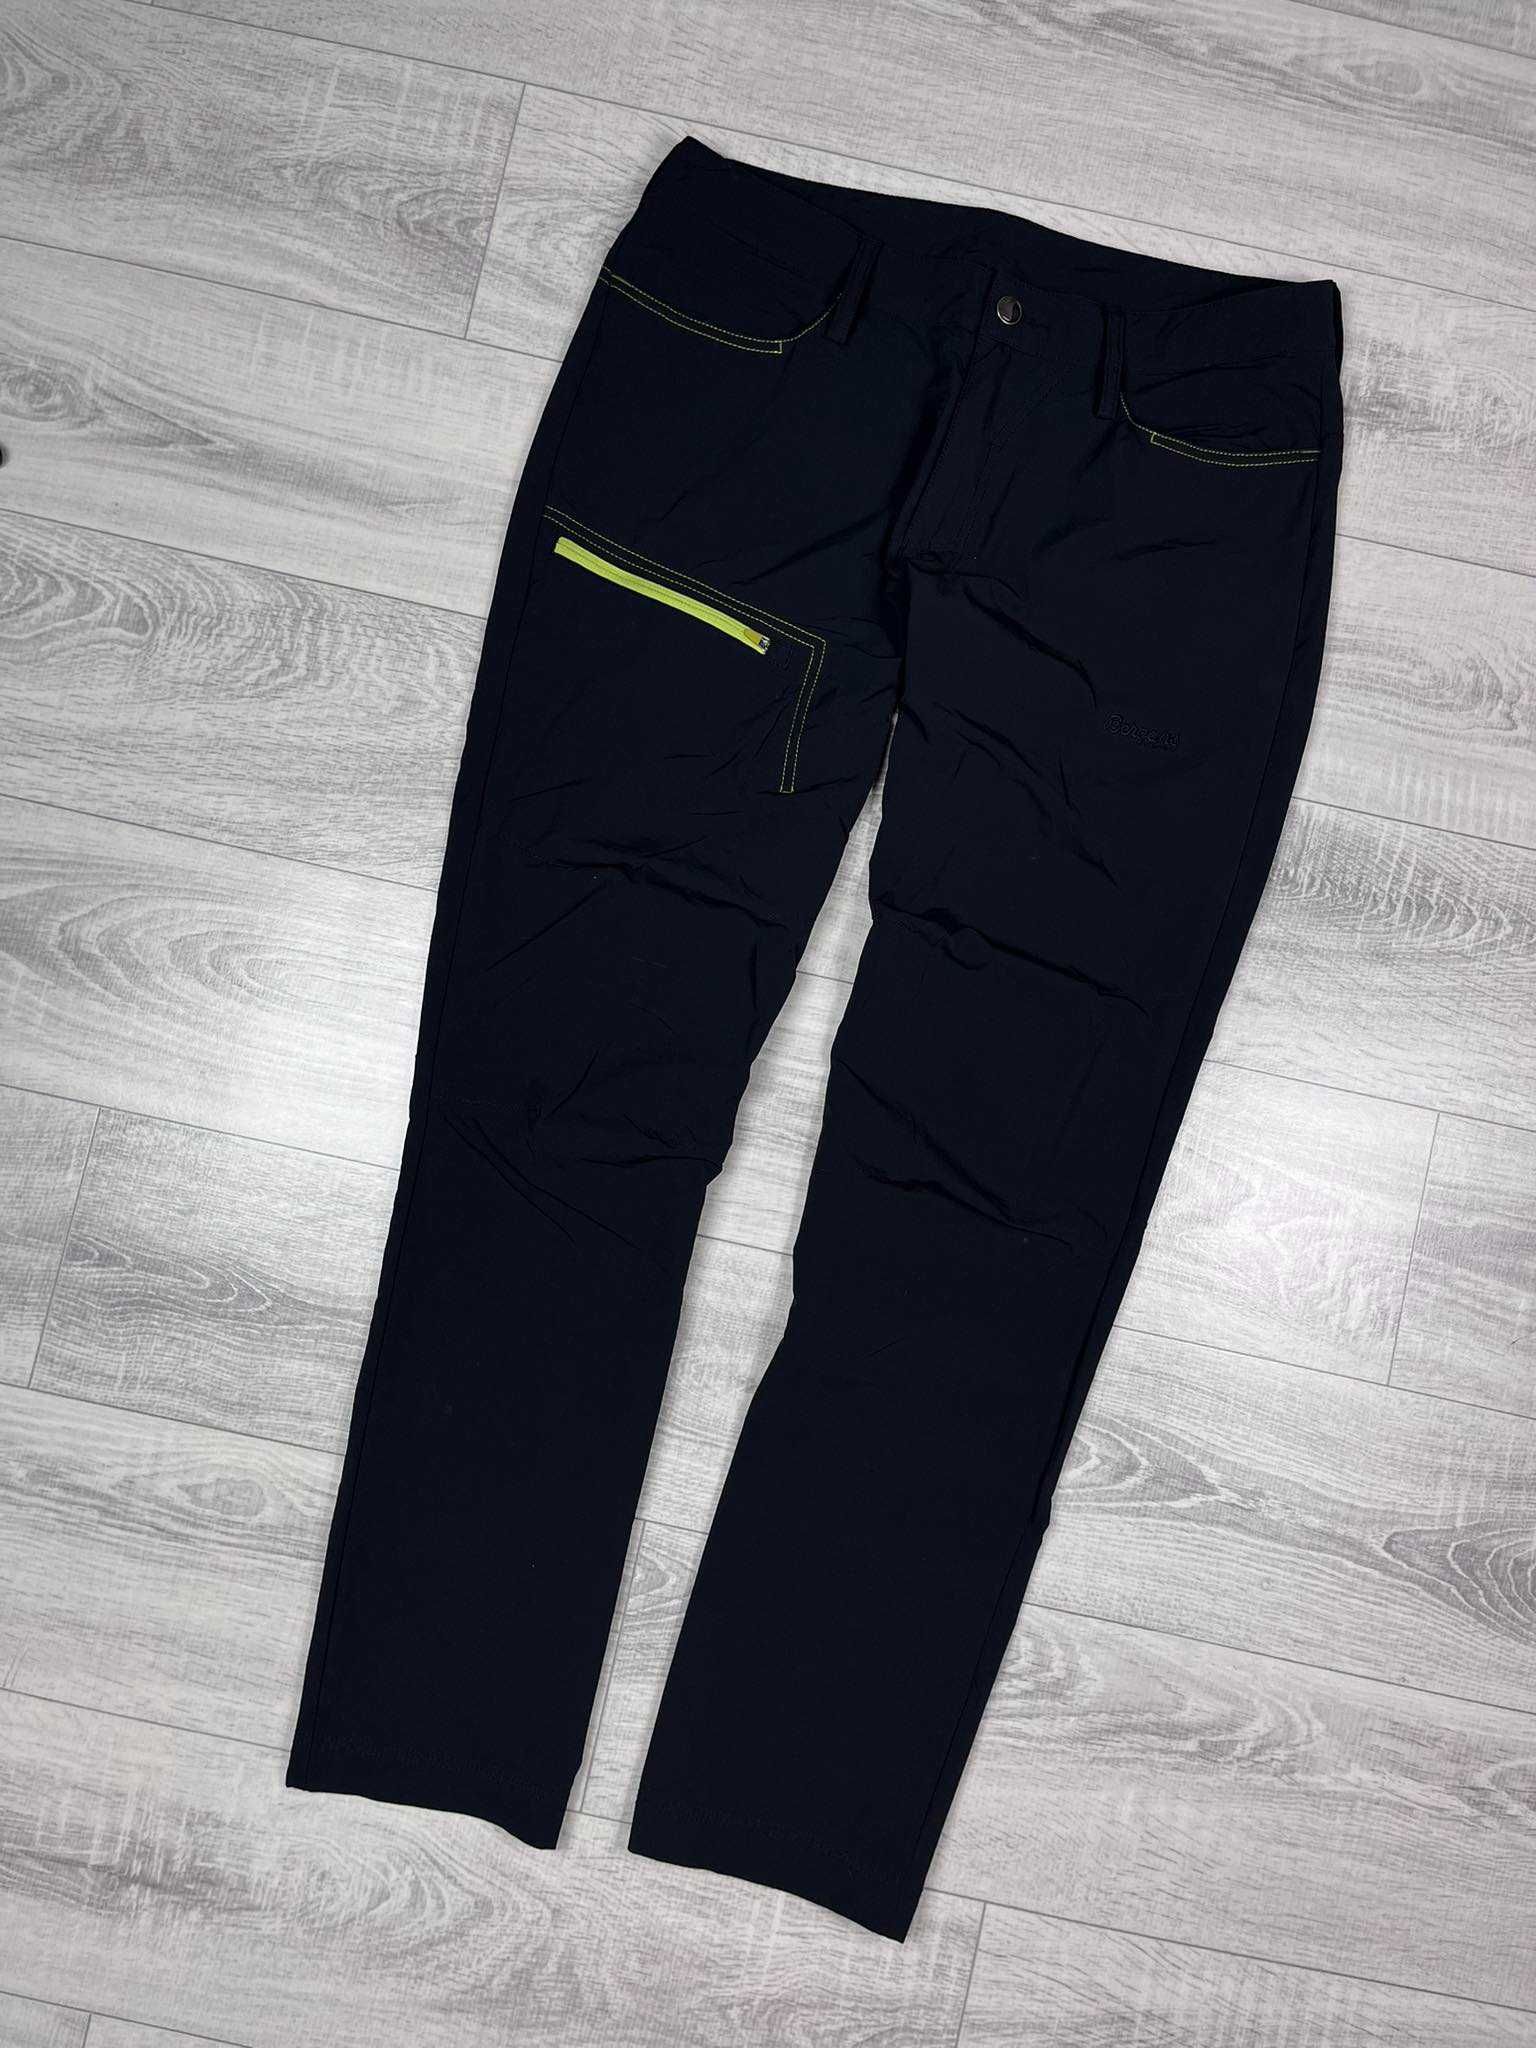 Spodnie Trekkingowe damskie Bergans czarne softshell nowy model outdoo